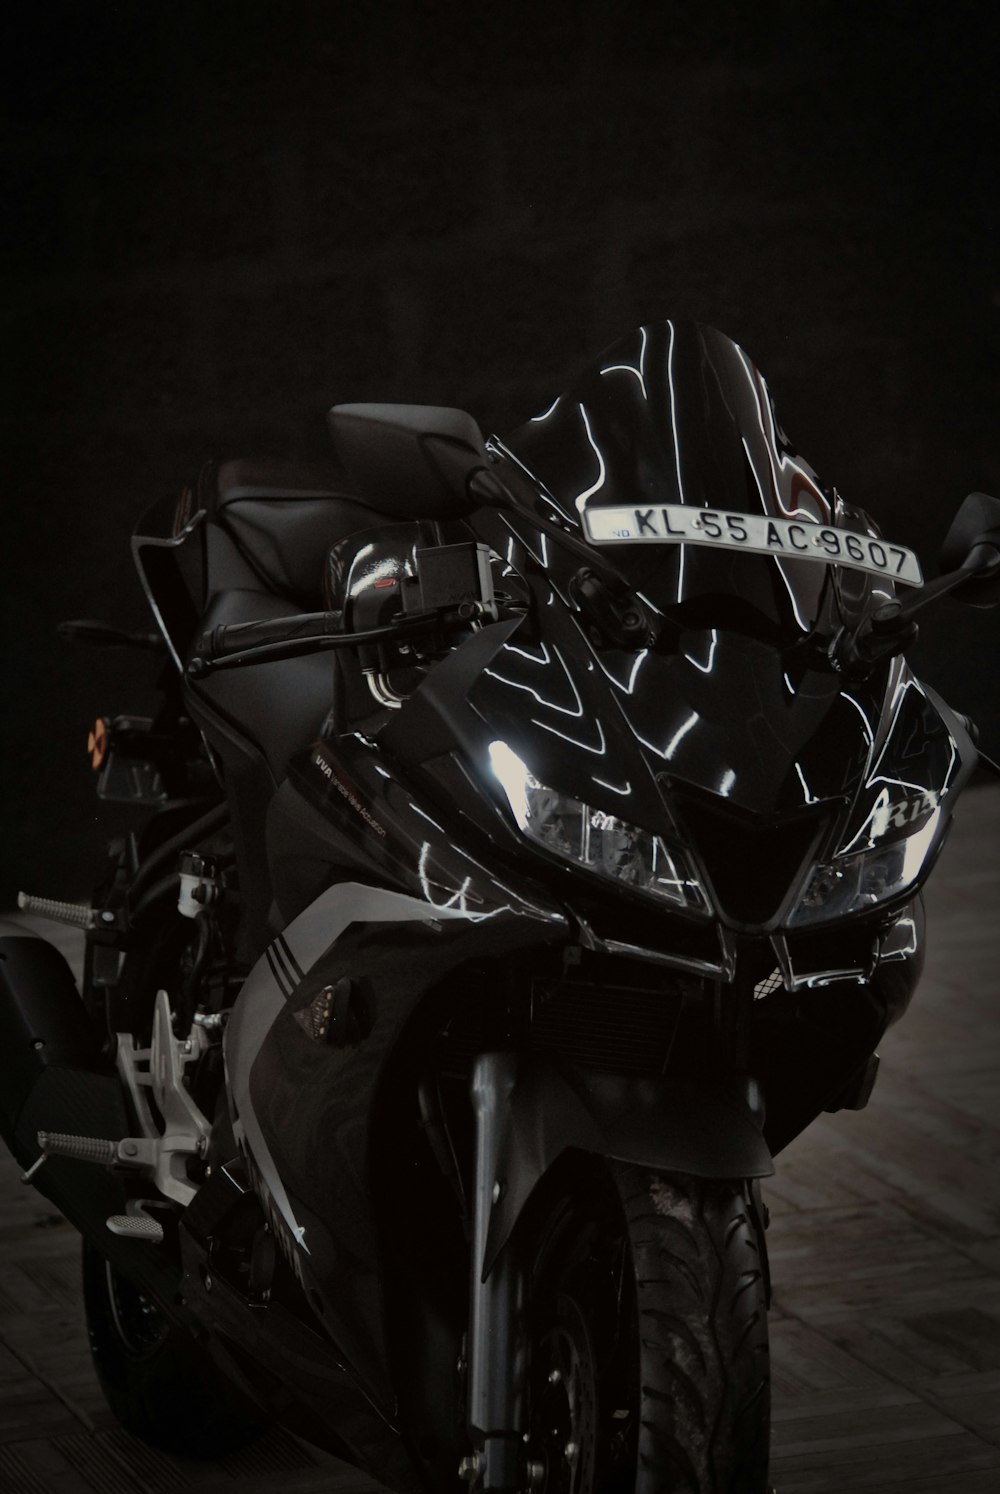 Una motocicleta negra estacionada en una habitación oscura